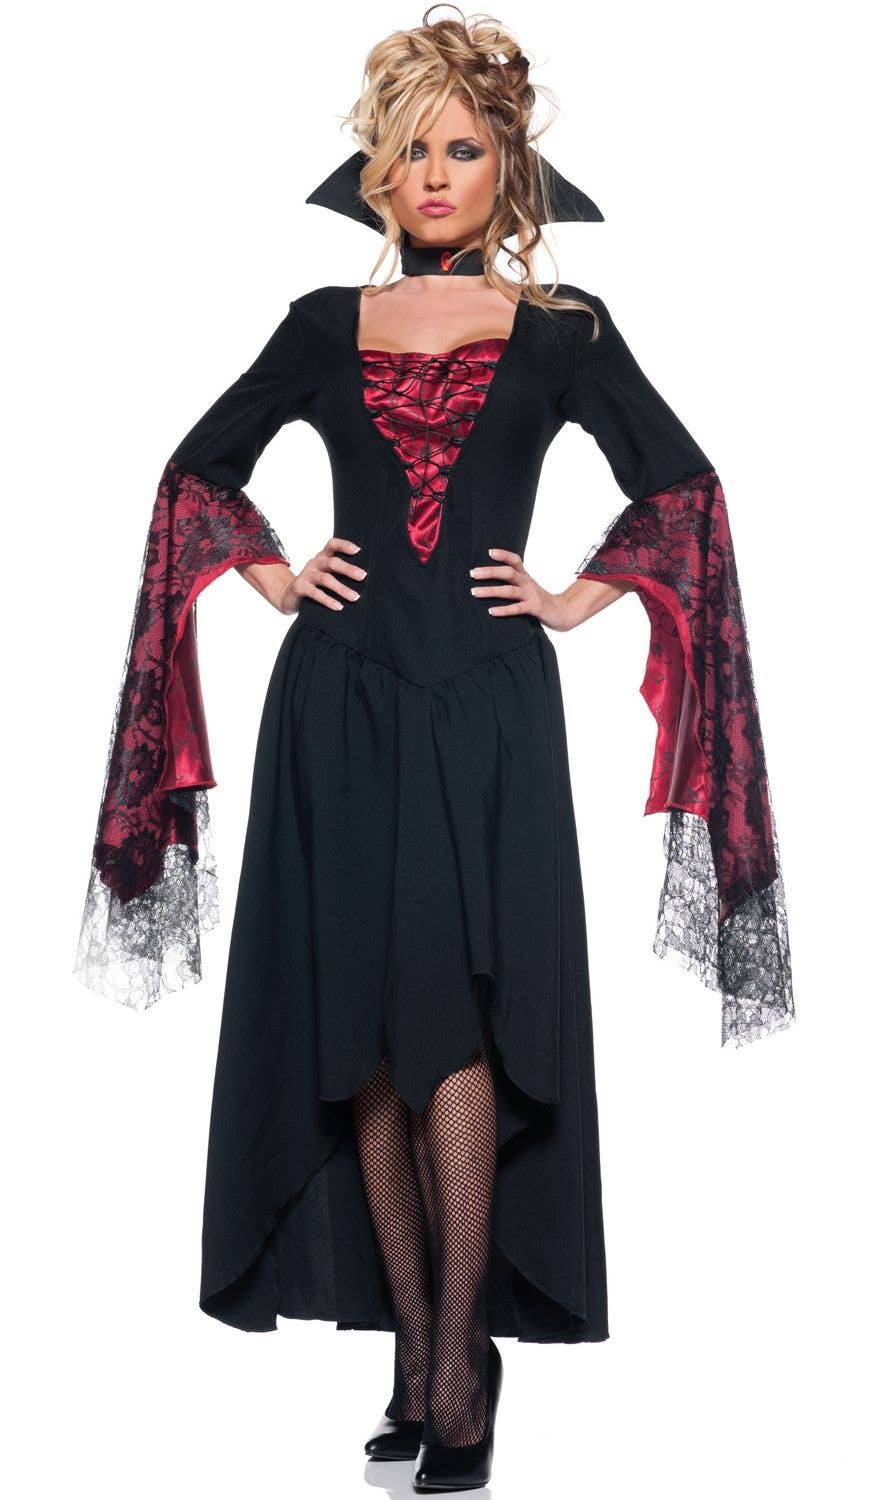 Black & Red Countess Halloween Costume | Women's Vampire Costume